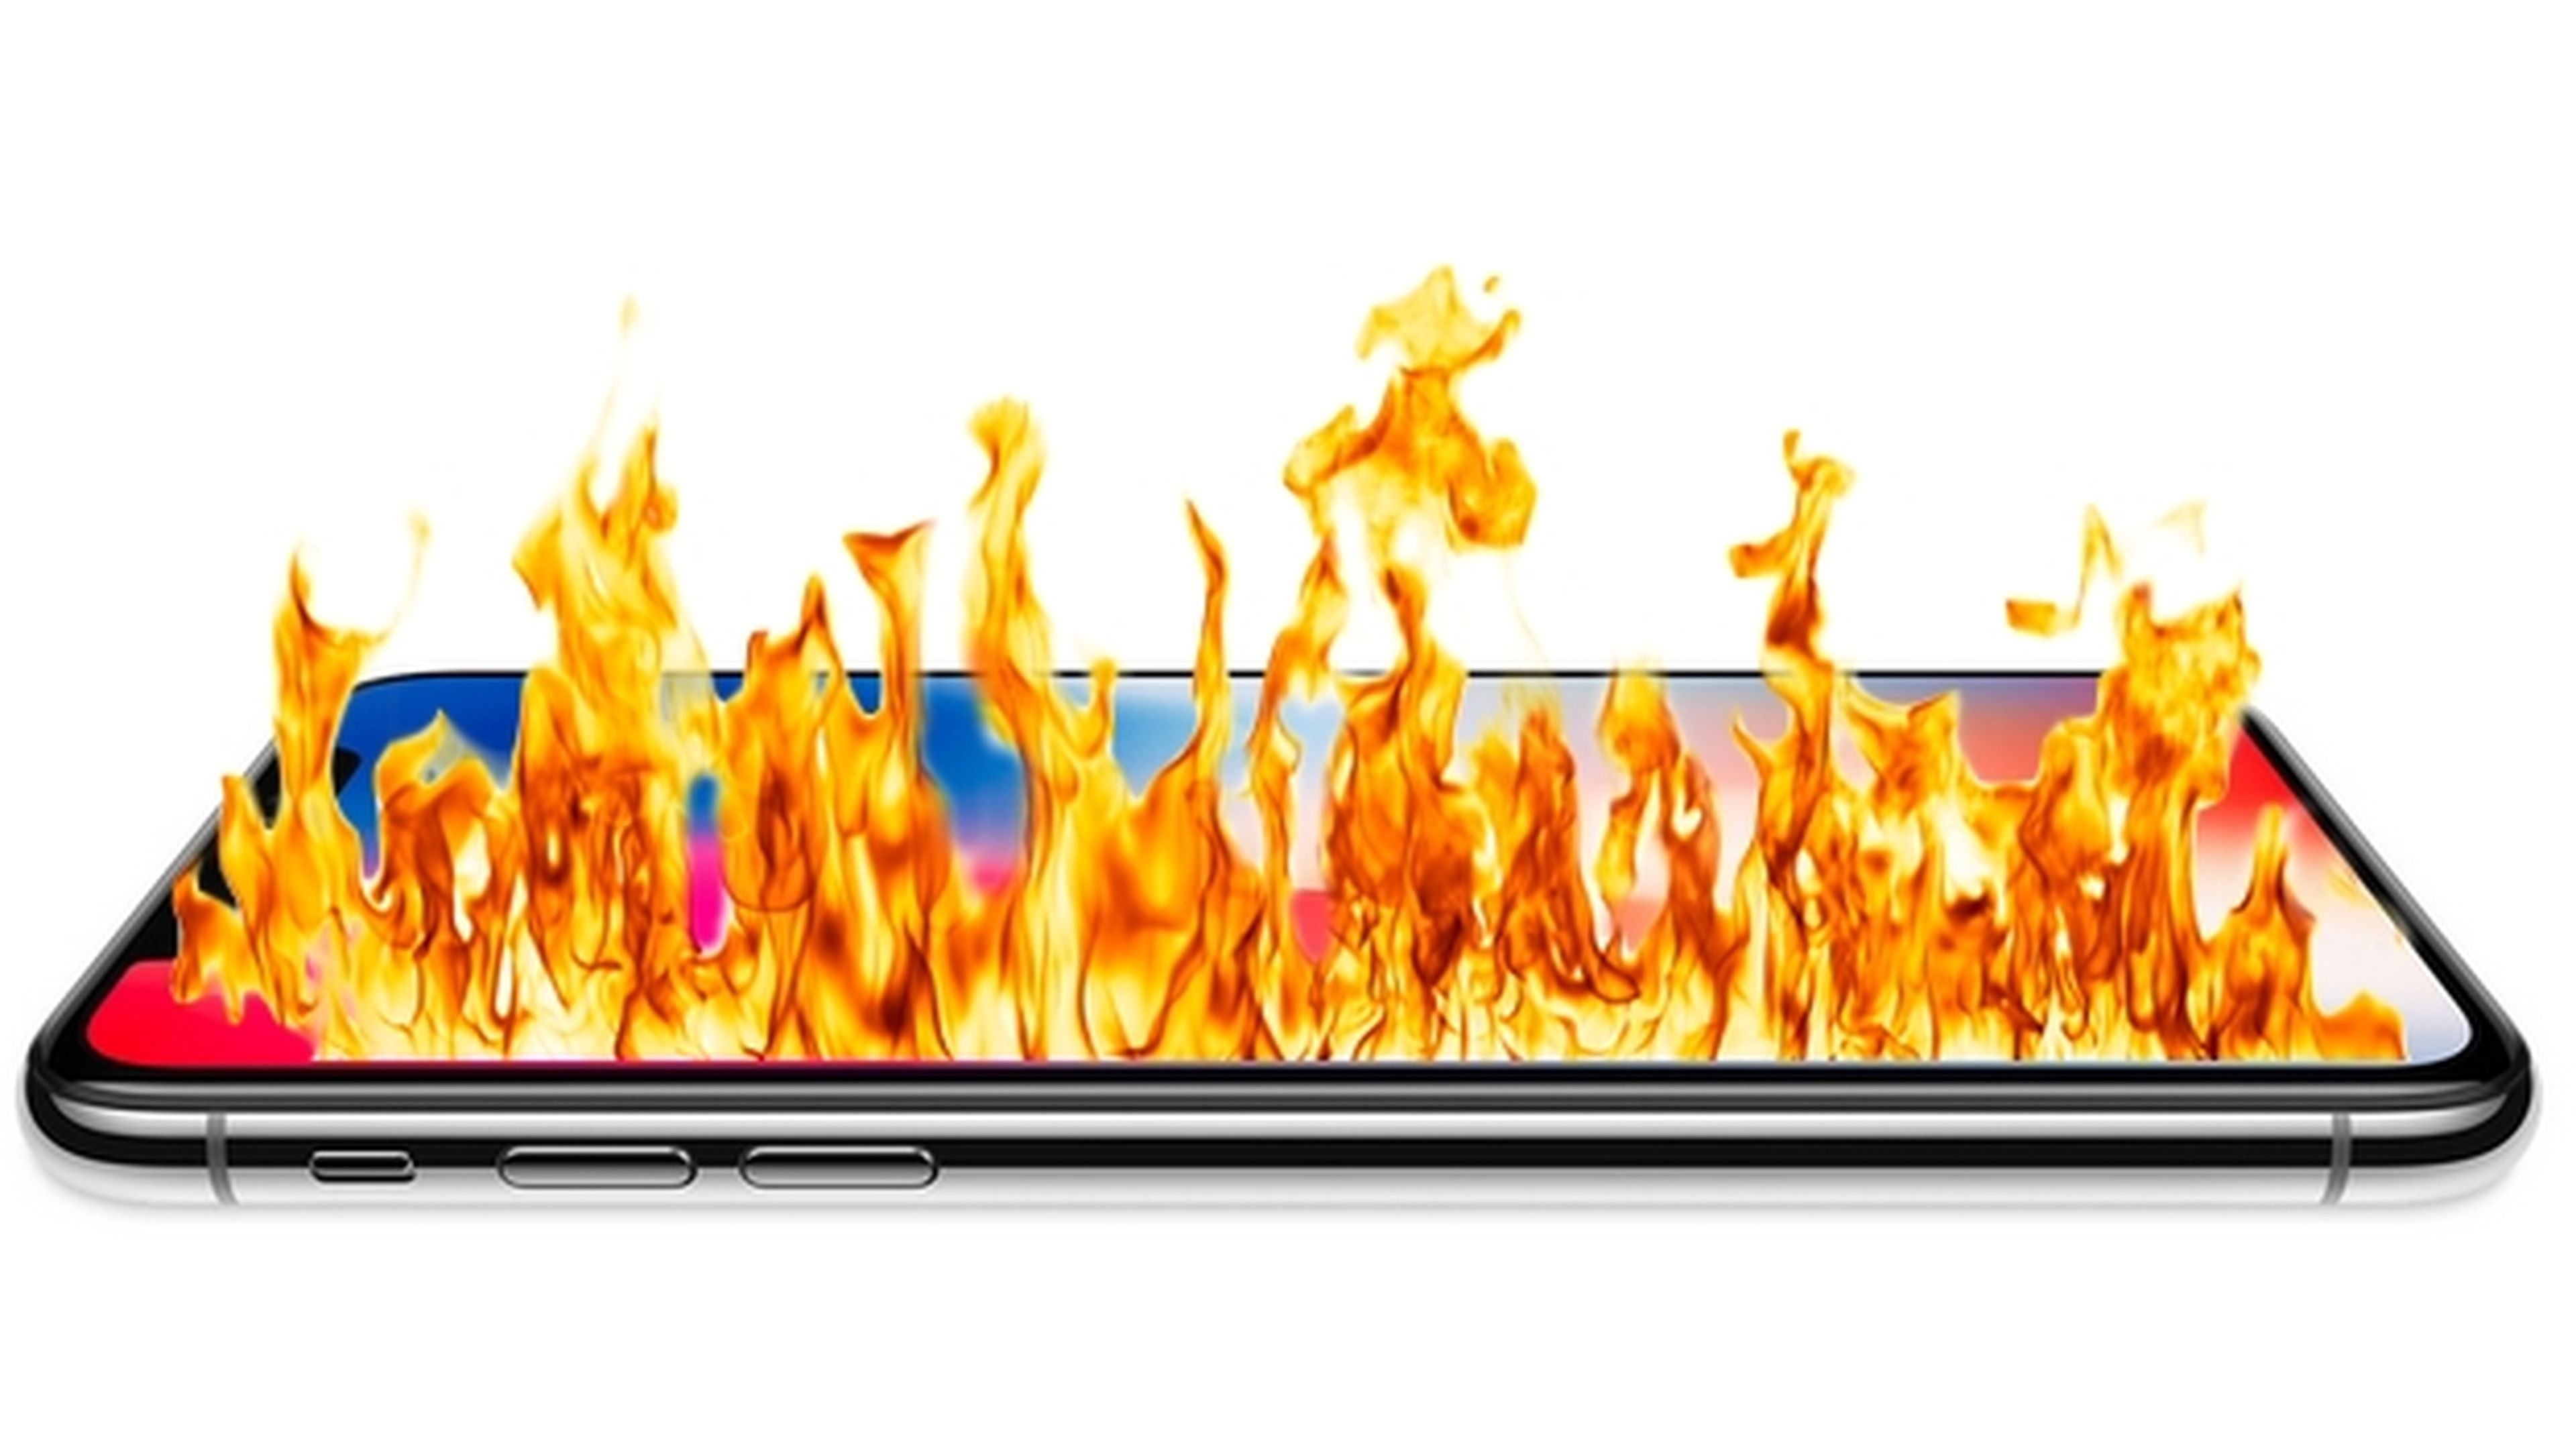 Una imagen fija puede quemar la pantalla del iPhone X, según Apple